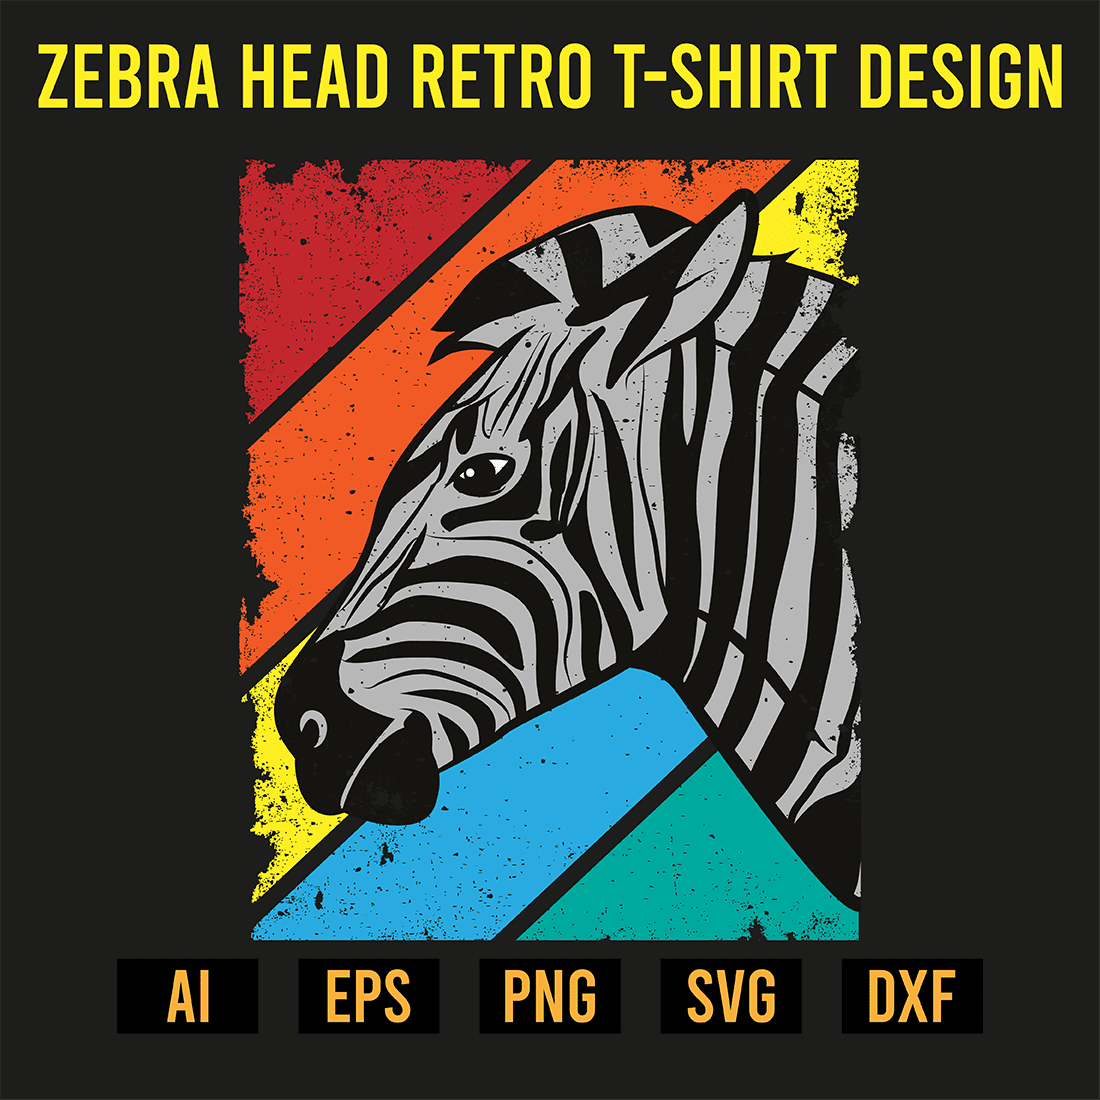 Zebra Head Retro T-Shirt Design preview image.